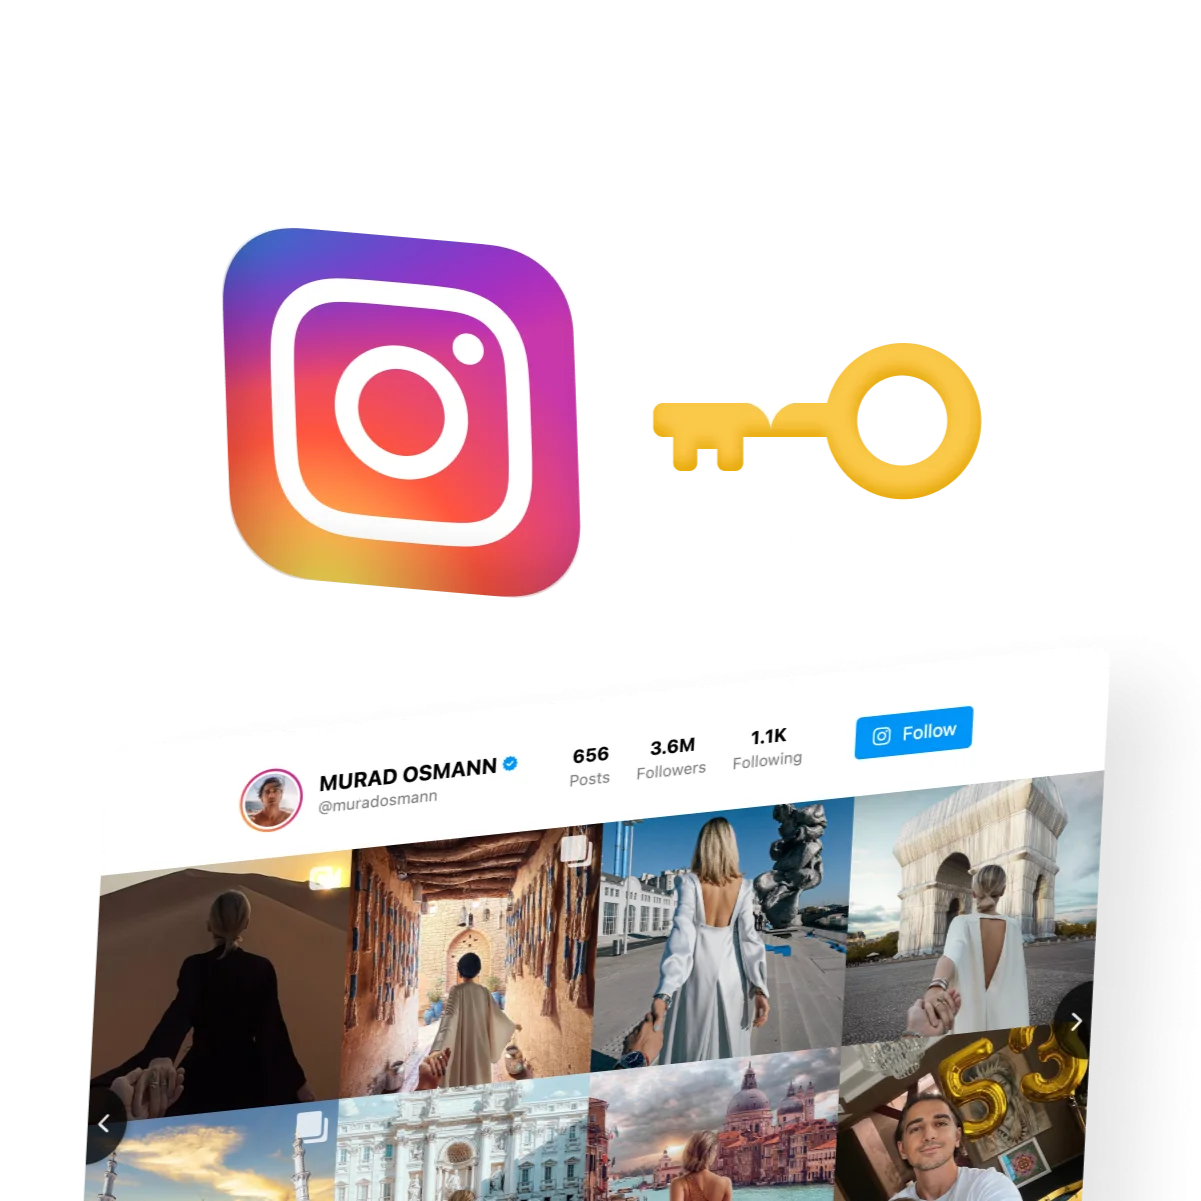 How to Get Instagram Access Token in 1 Minute